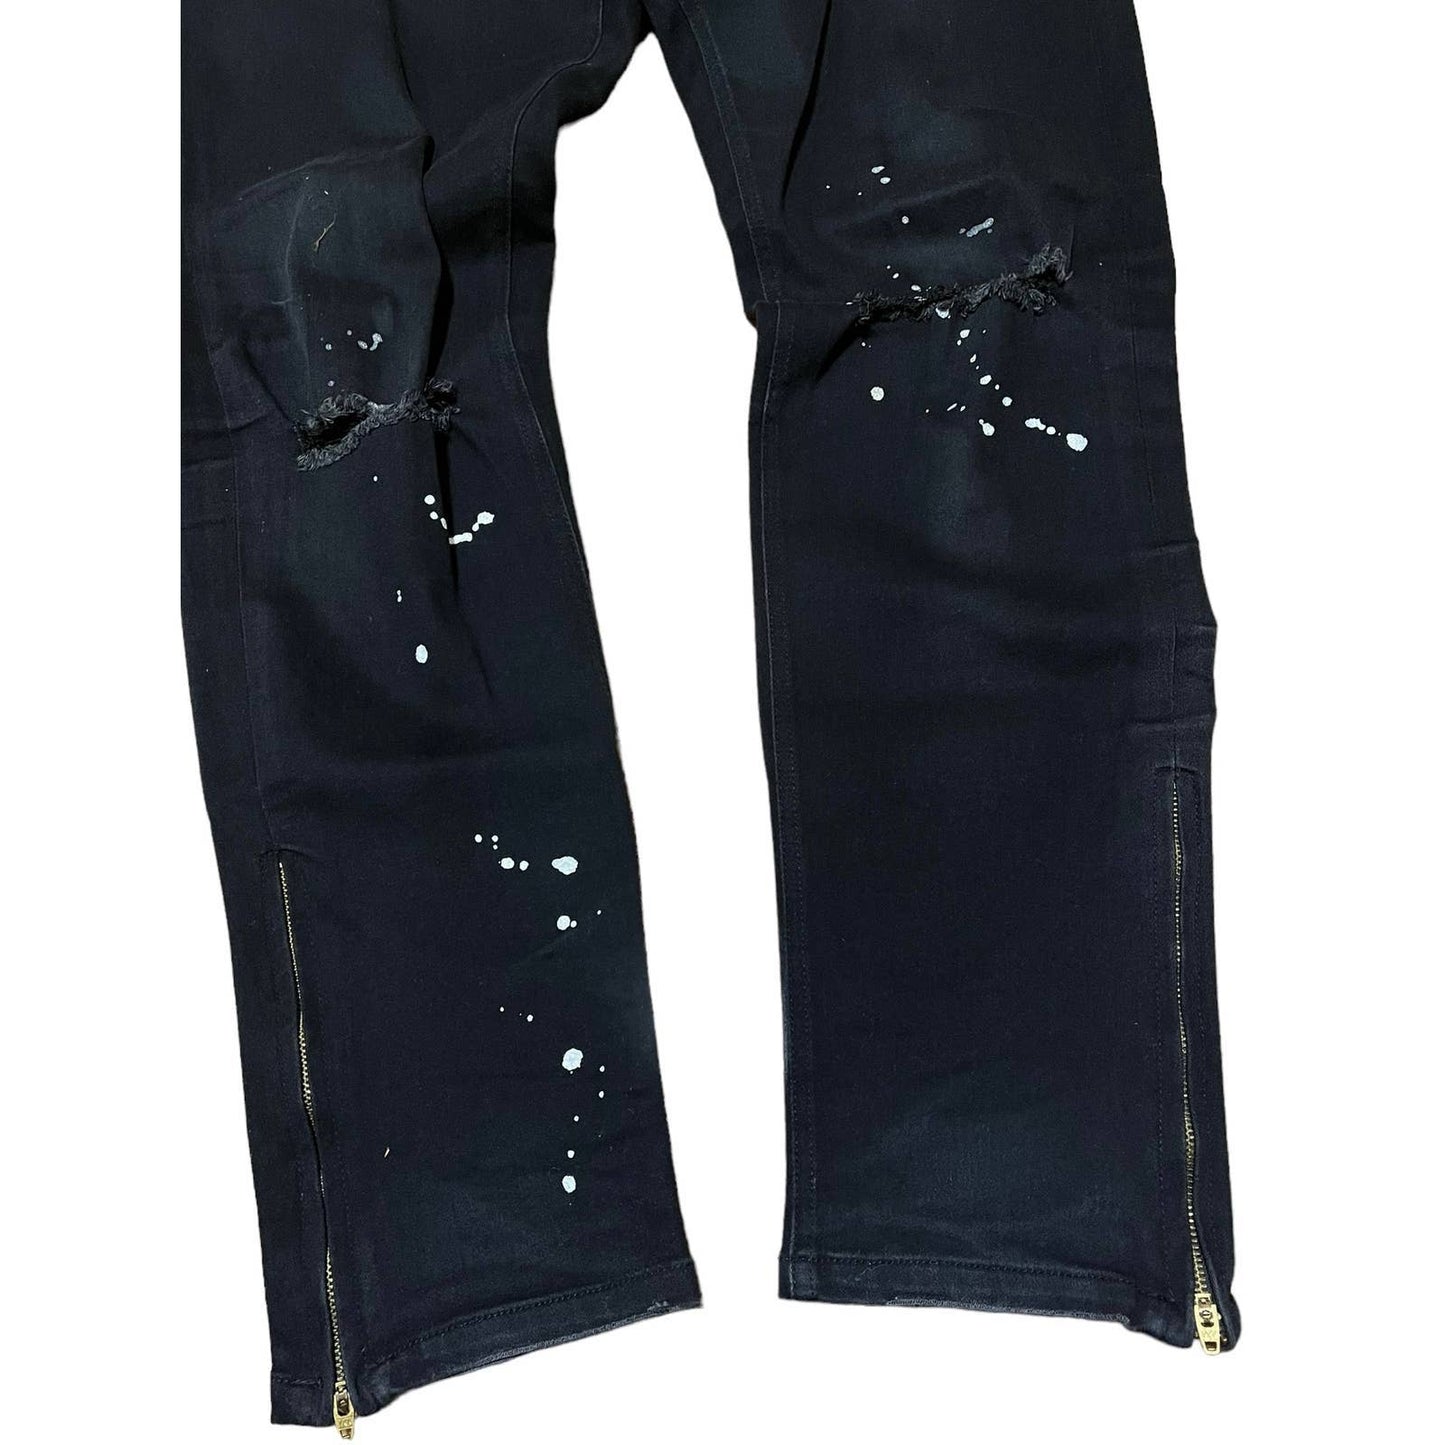 Number (N)ine Paint Splatter Distressed Jeans